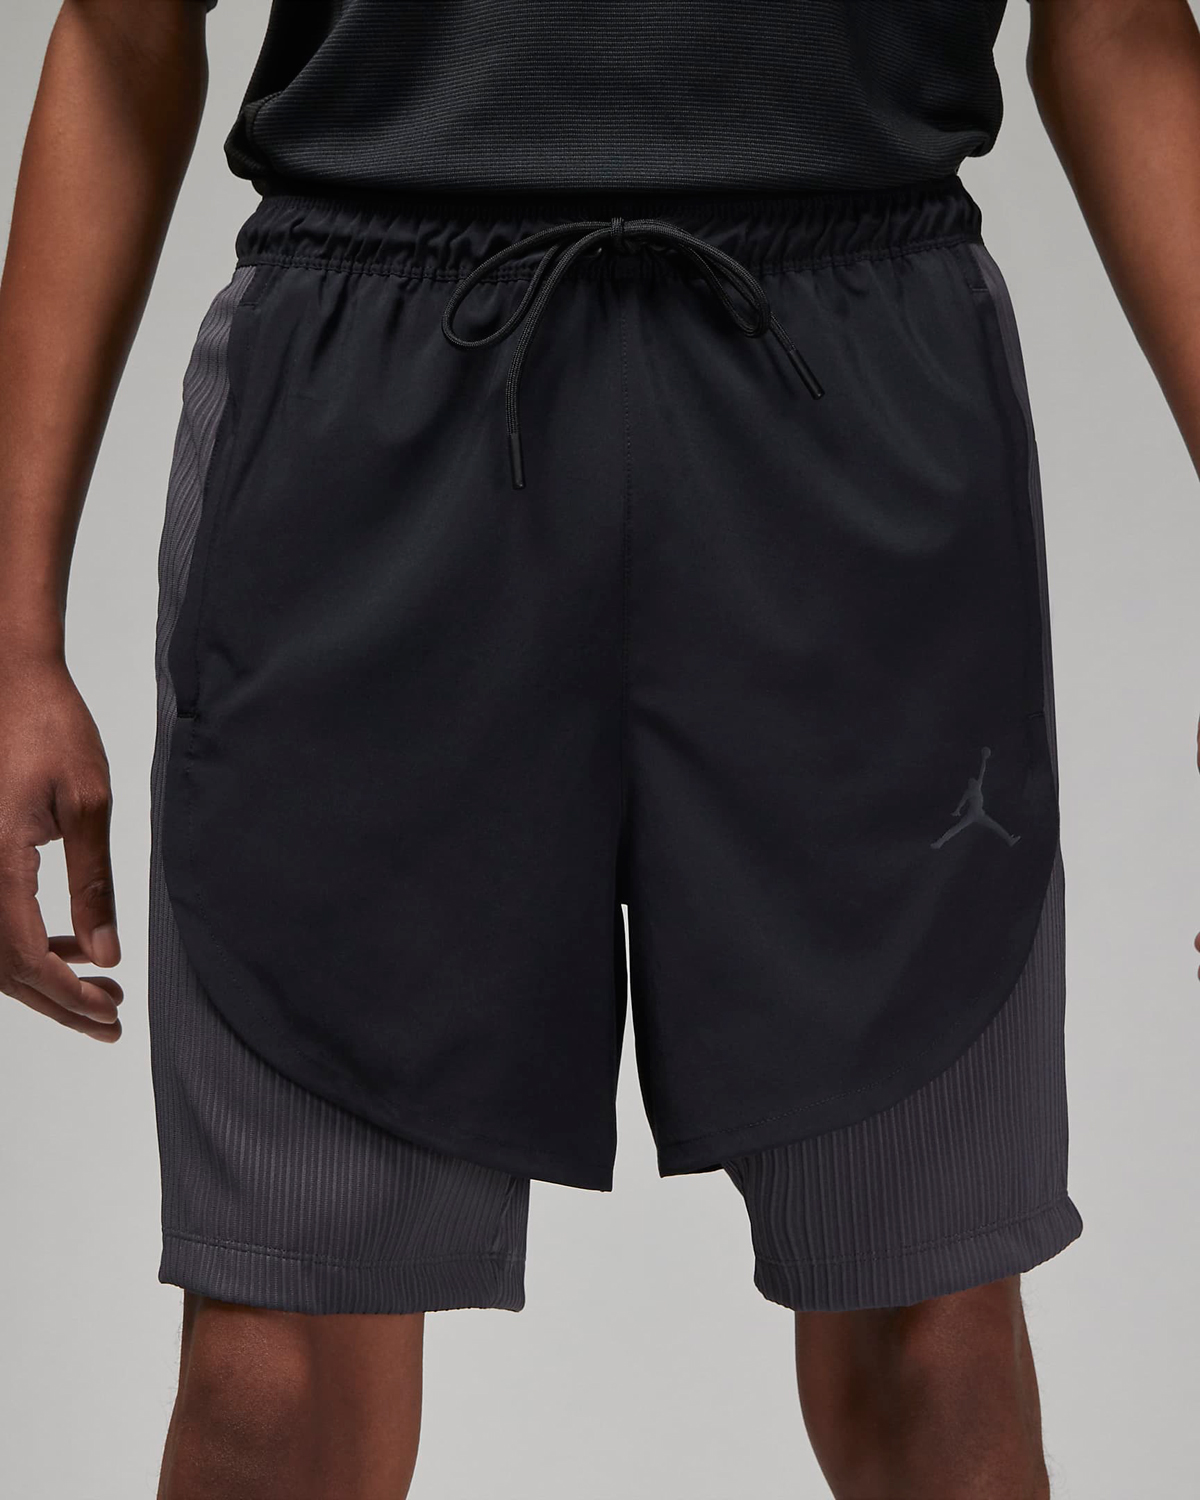 Jordan-Dri-Fit-Sport-Shorts-Black-Dark-Shdaow-2